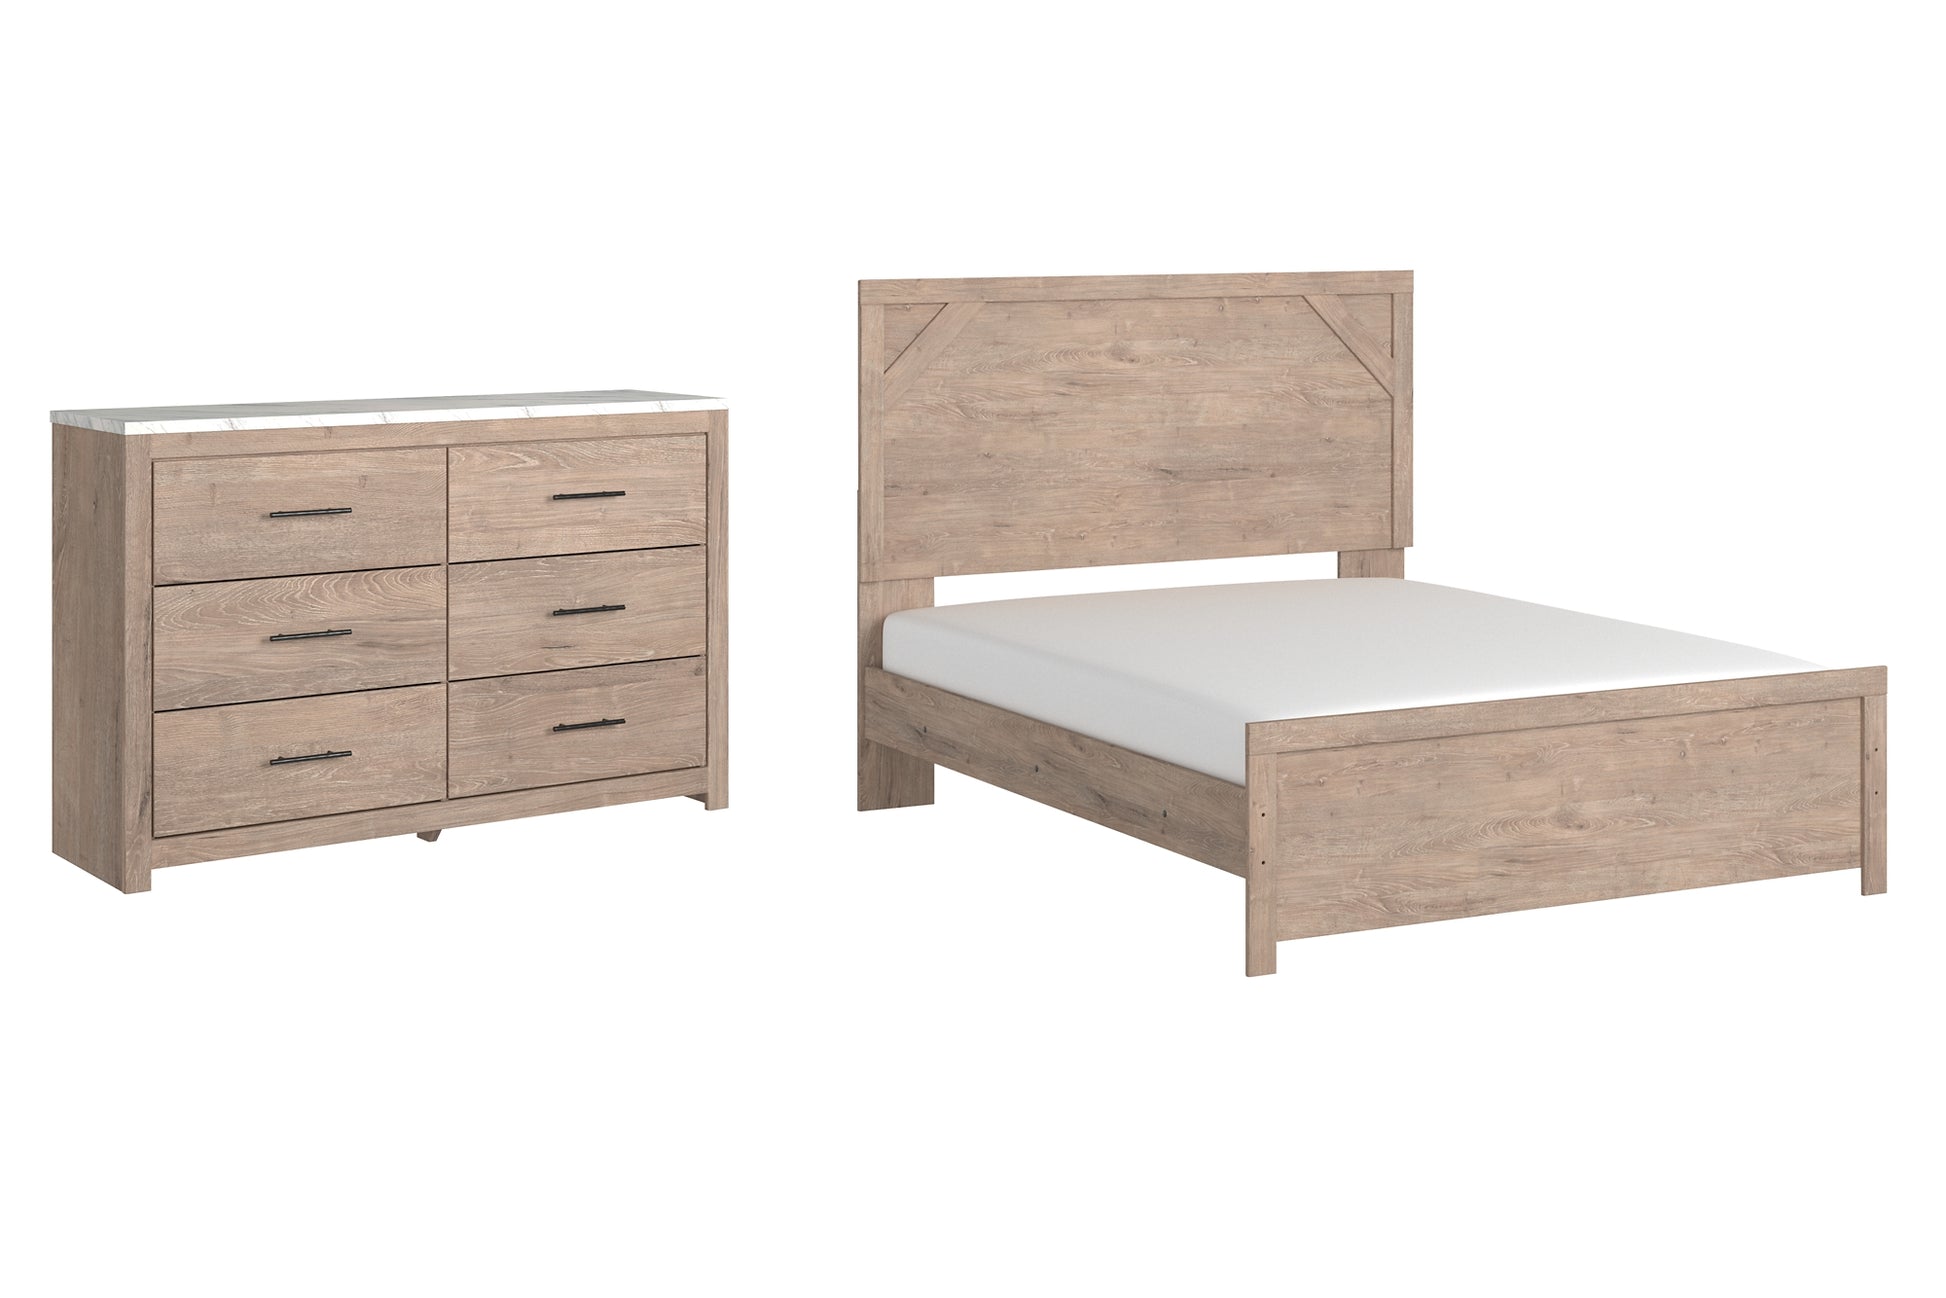 Senniberg Queen Panel Bed with Dresser JB's Furniture  Home Furniture, Home Decor, Furniture Store